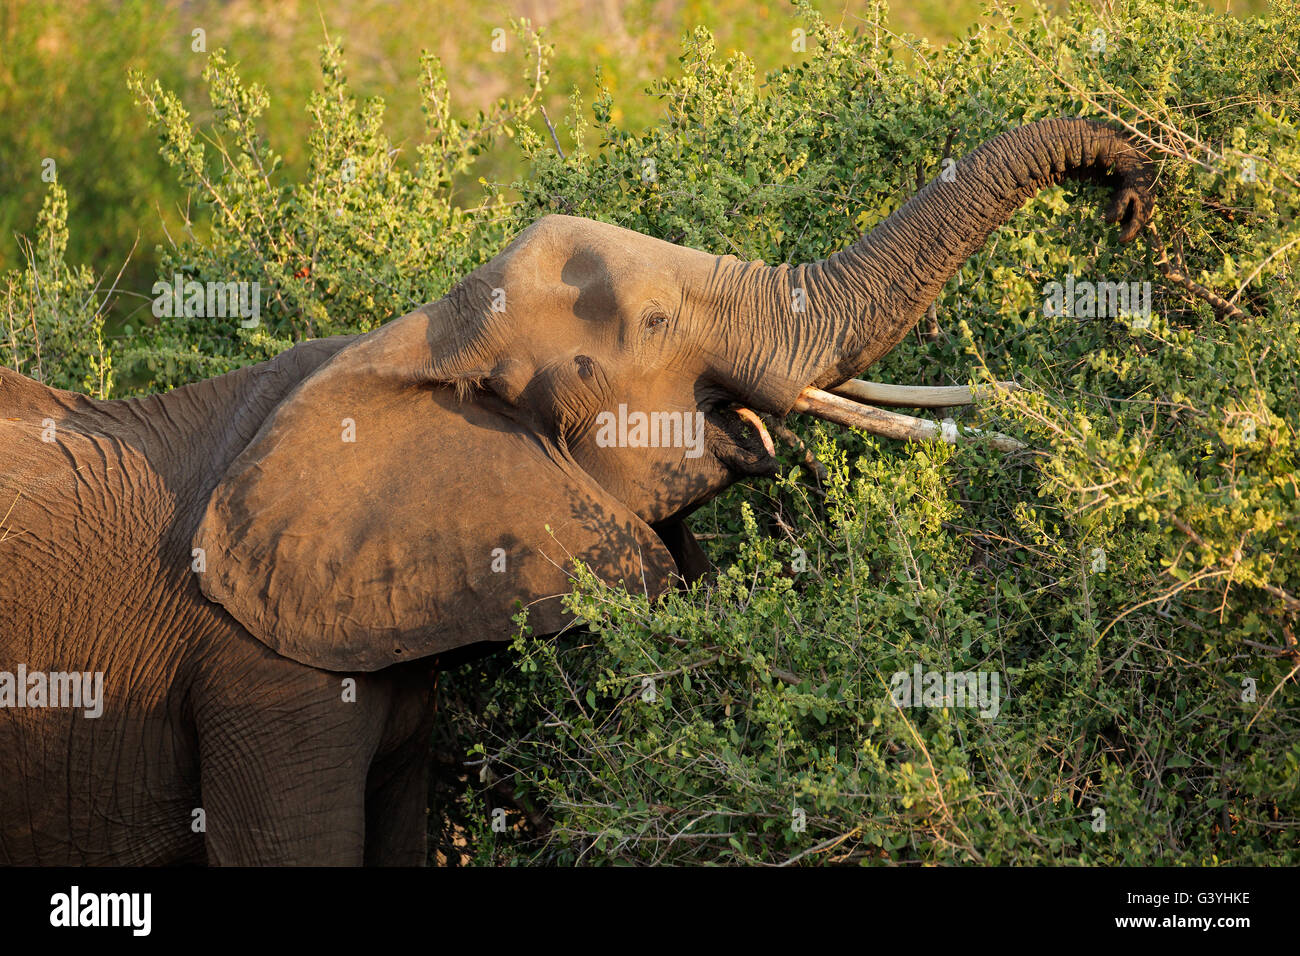 L'éléphant africain (Loxodonta africana) se nourrissant d'un arbre, Kruger National Park, Afrique du Sud Banque D'Images